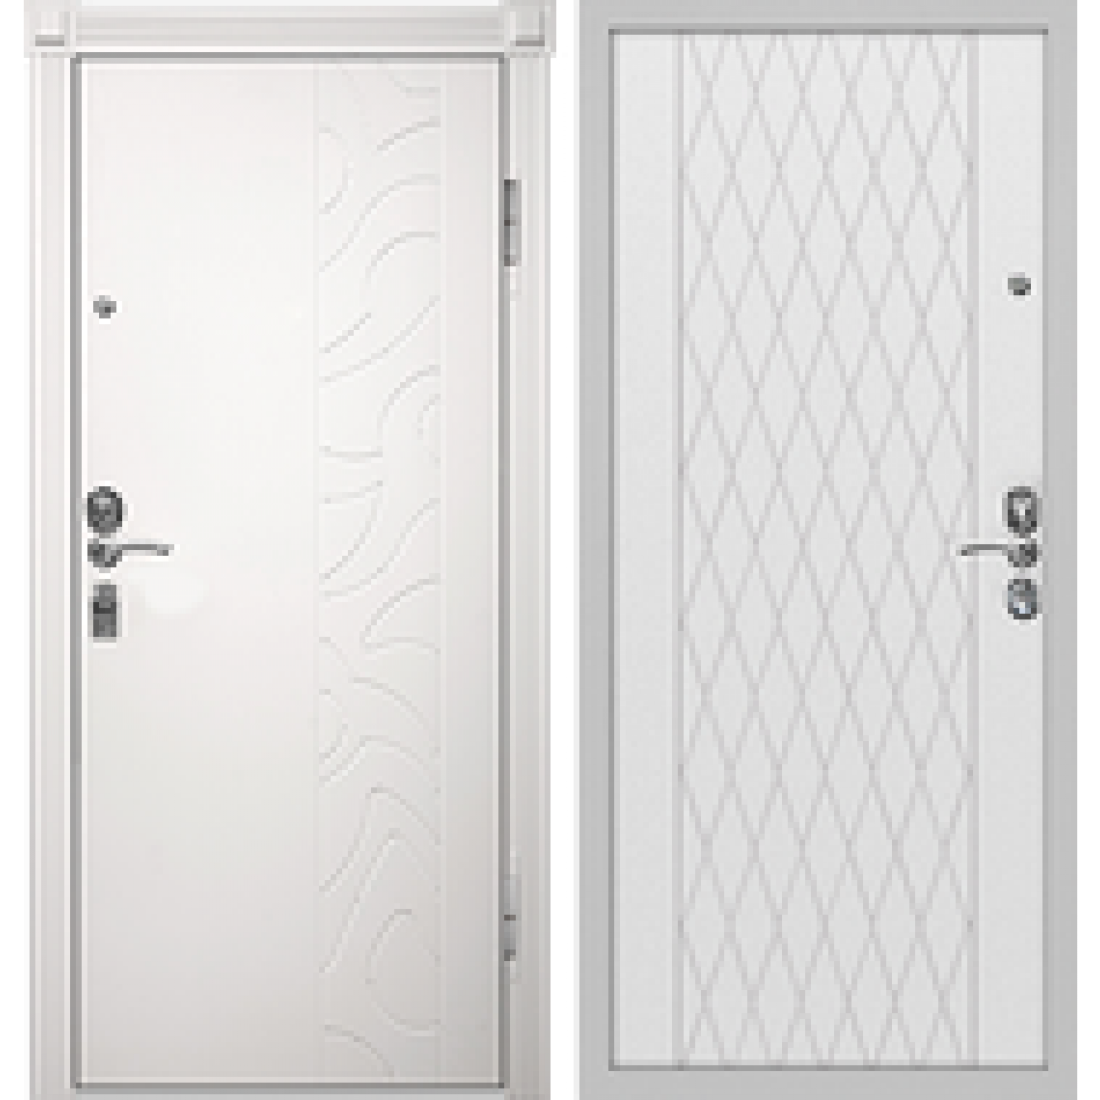 Дверь входная СИБИРИЯ белый f-001. Дверь входная Zeta белая дверной. Входная дверь БП - 3 NX 2 (White Ash). Дверь входная металлическая Guardian белая. Входная дверь в квартиру белая